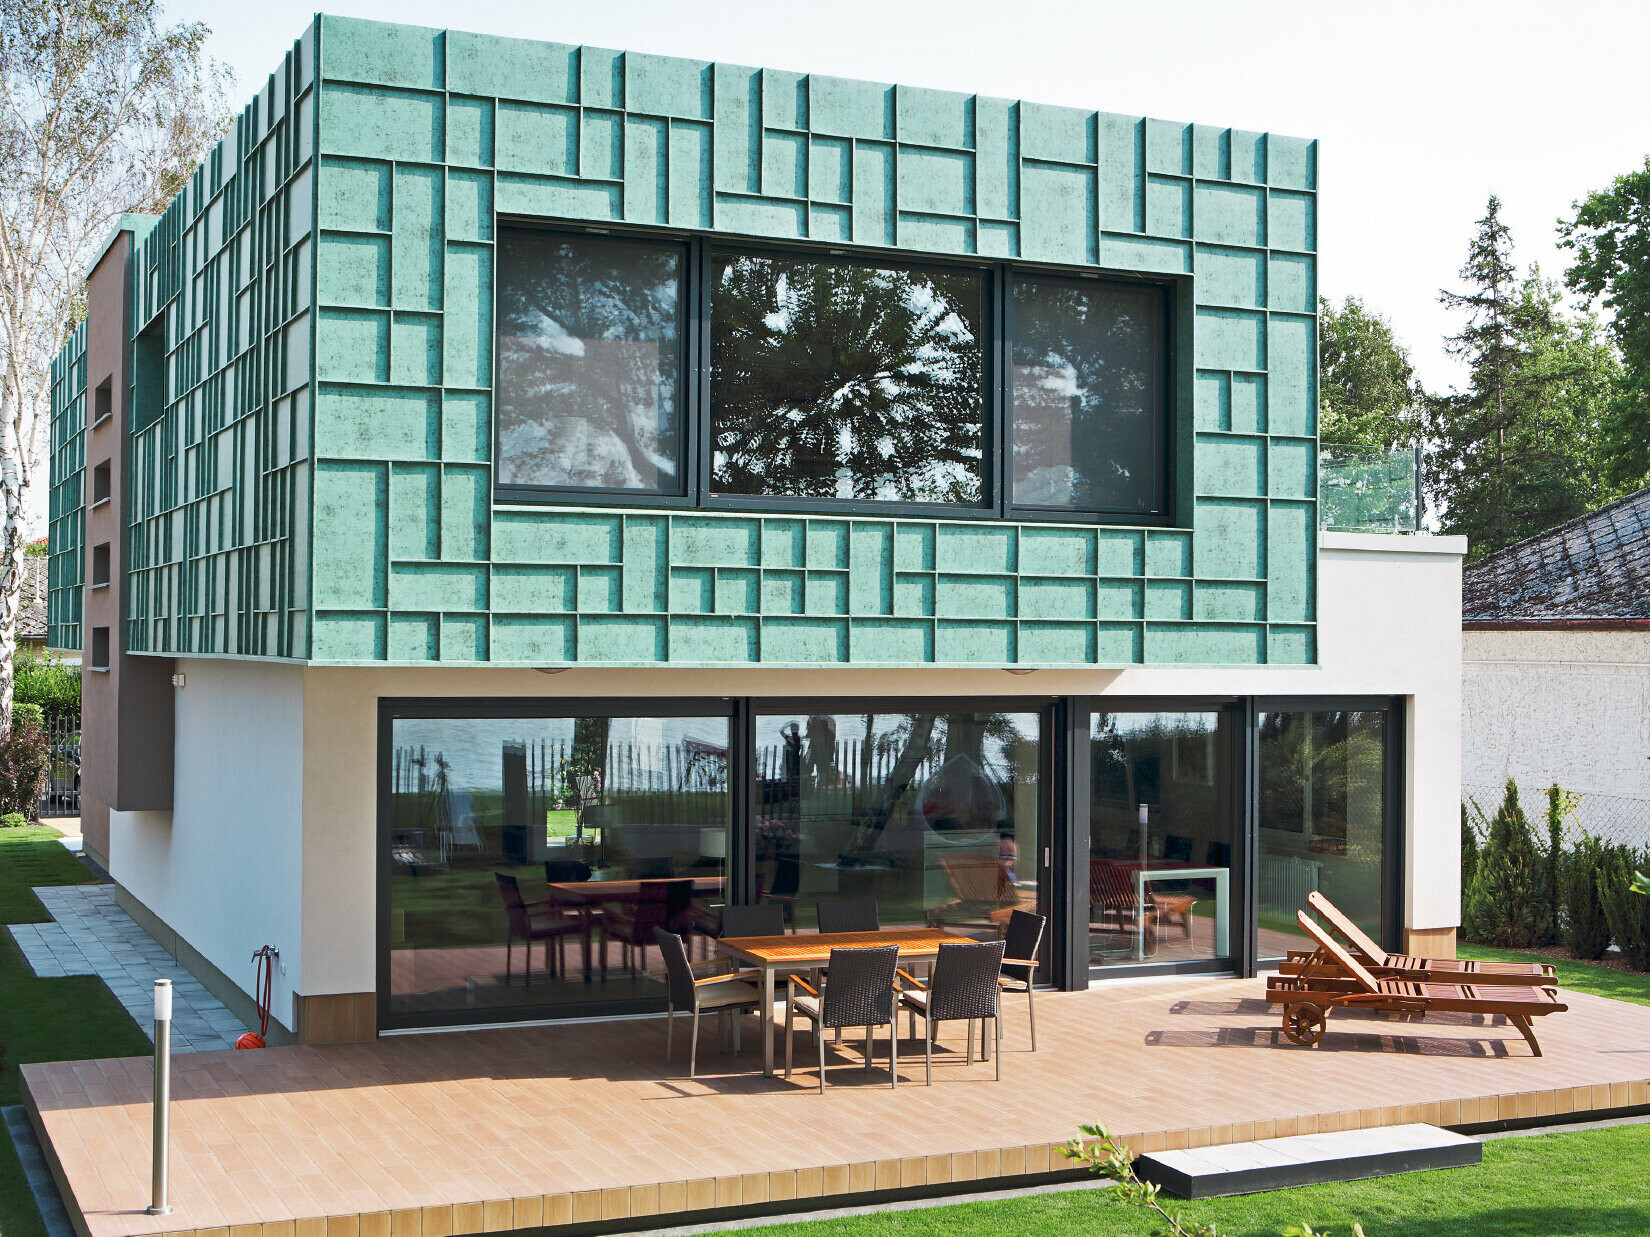 Moderní rodinný domek s fasádou odolnou proti větru, obloženou prvky PREFALZ v barvě P10 zelená patina.